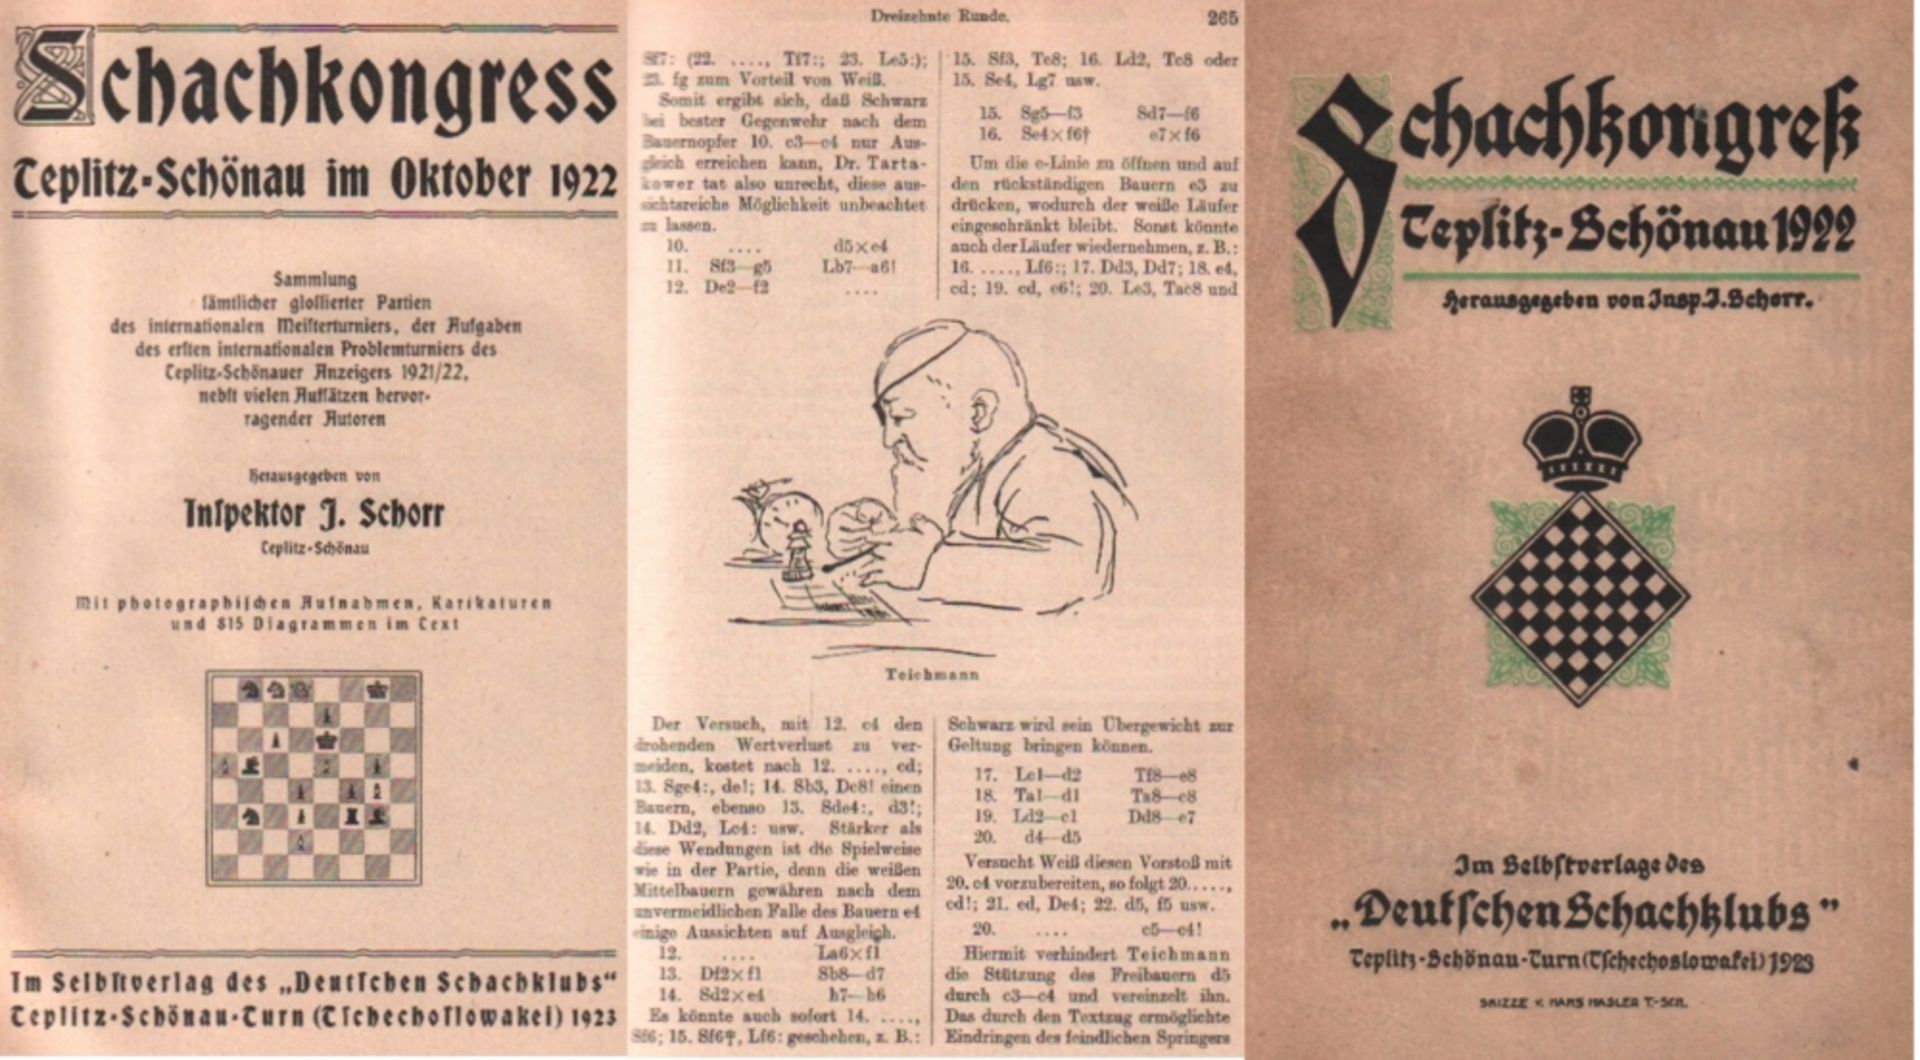 Teplitz - Schönau 1922. Schorr, J. (Hrsg.) Schachkongress Teplitz - Schönau im Oktober 1922.